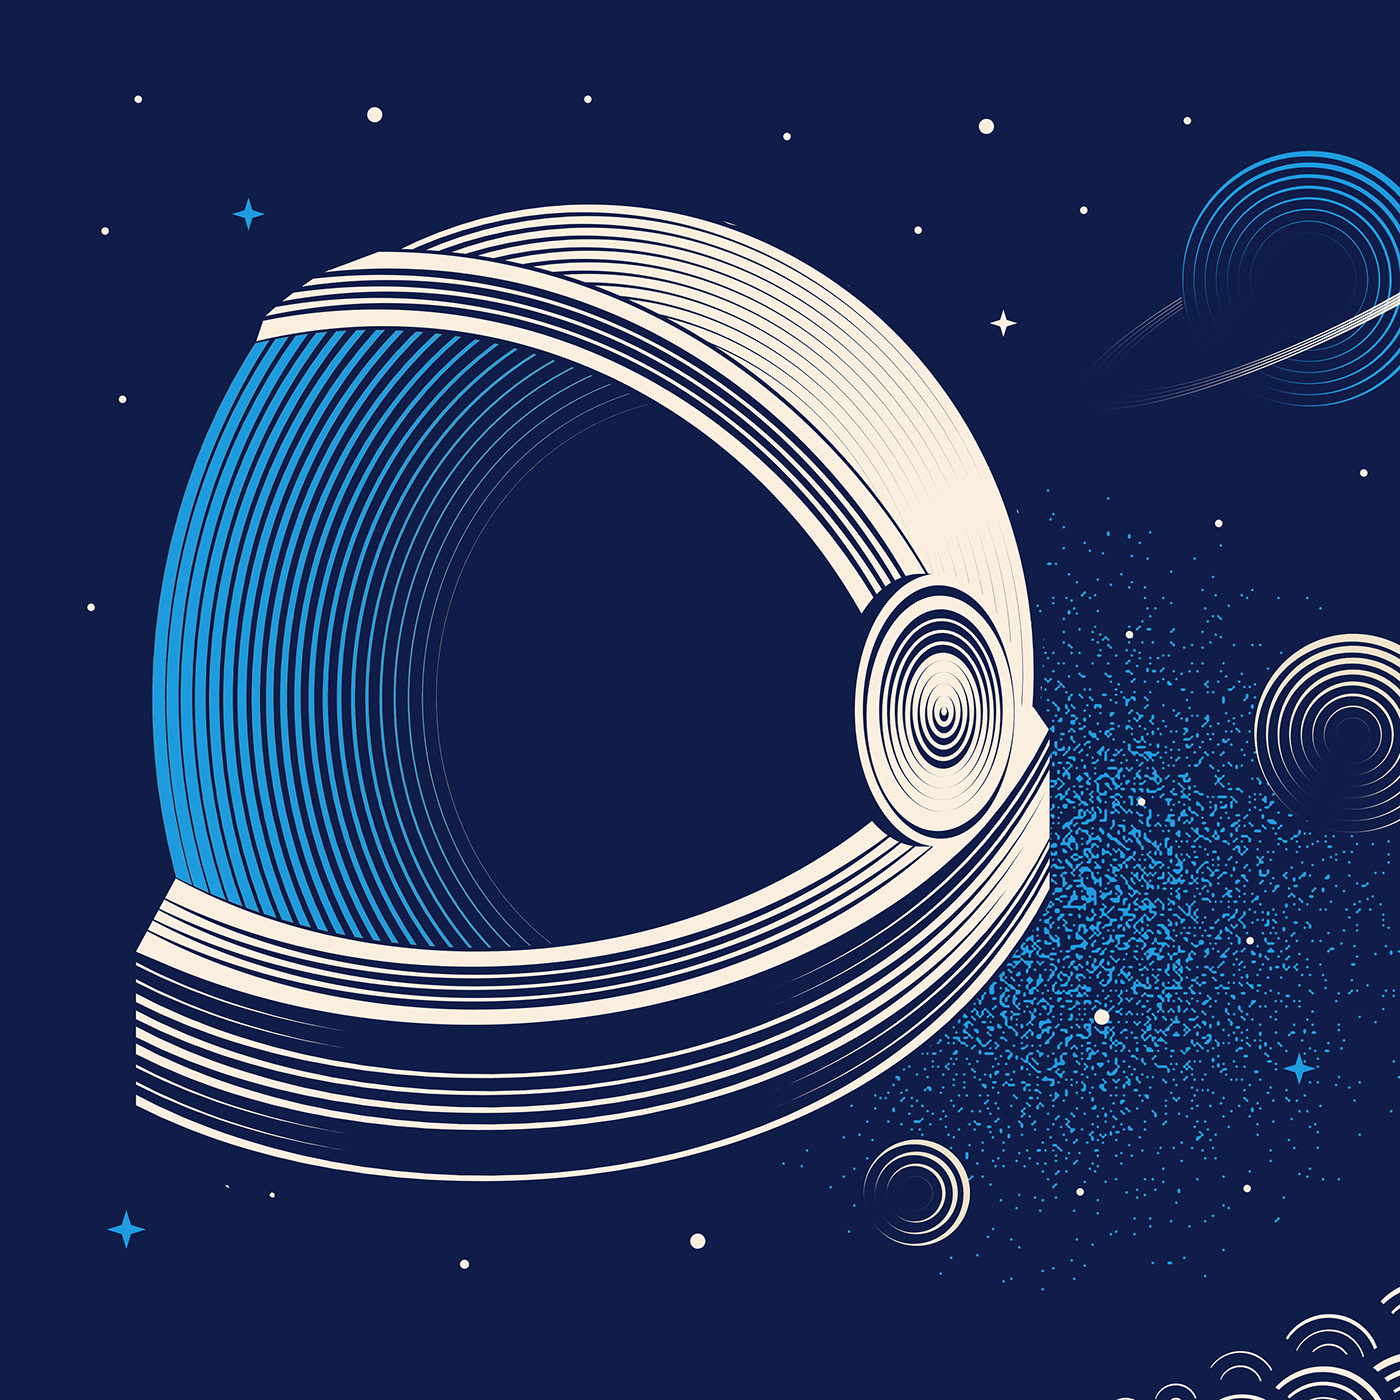 blue moon beer Space  apollo 11 Moon landing beer label logo astronaut astronaut helmet vector